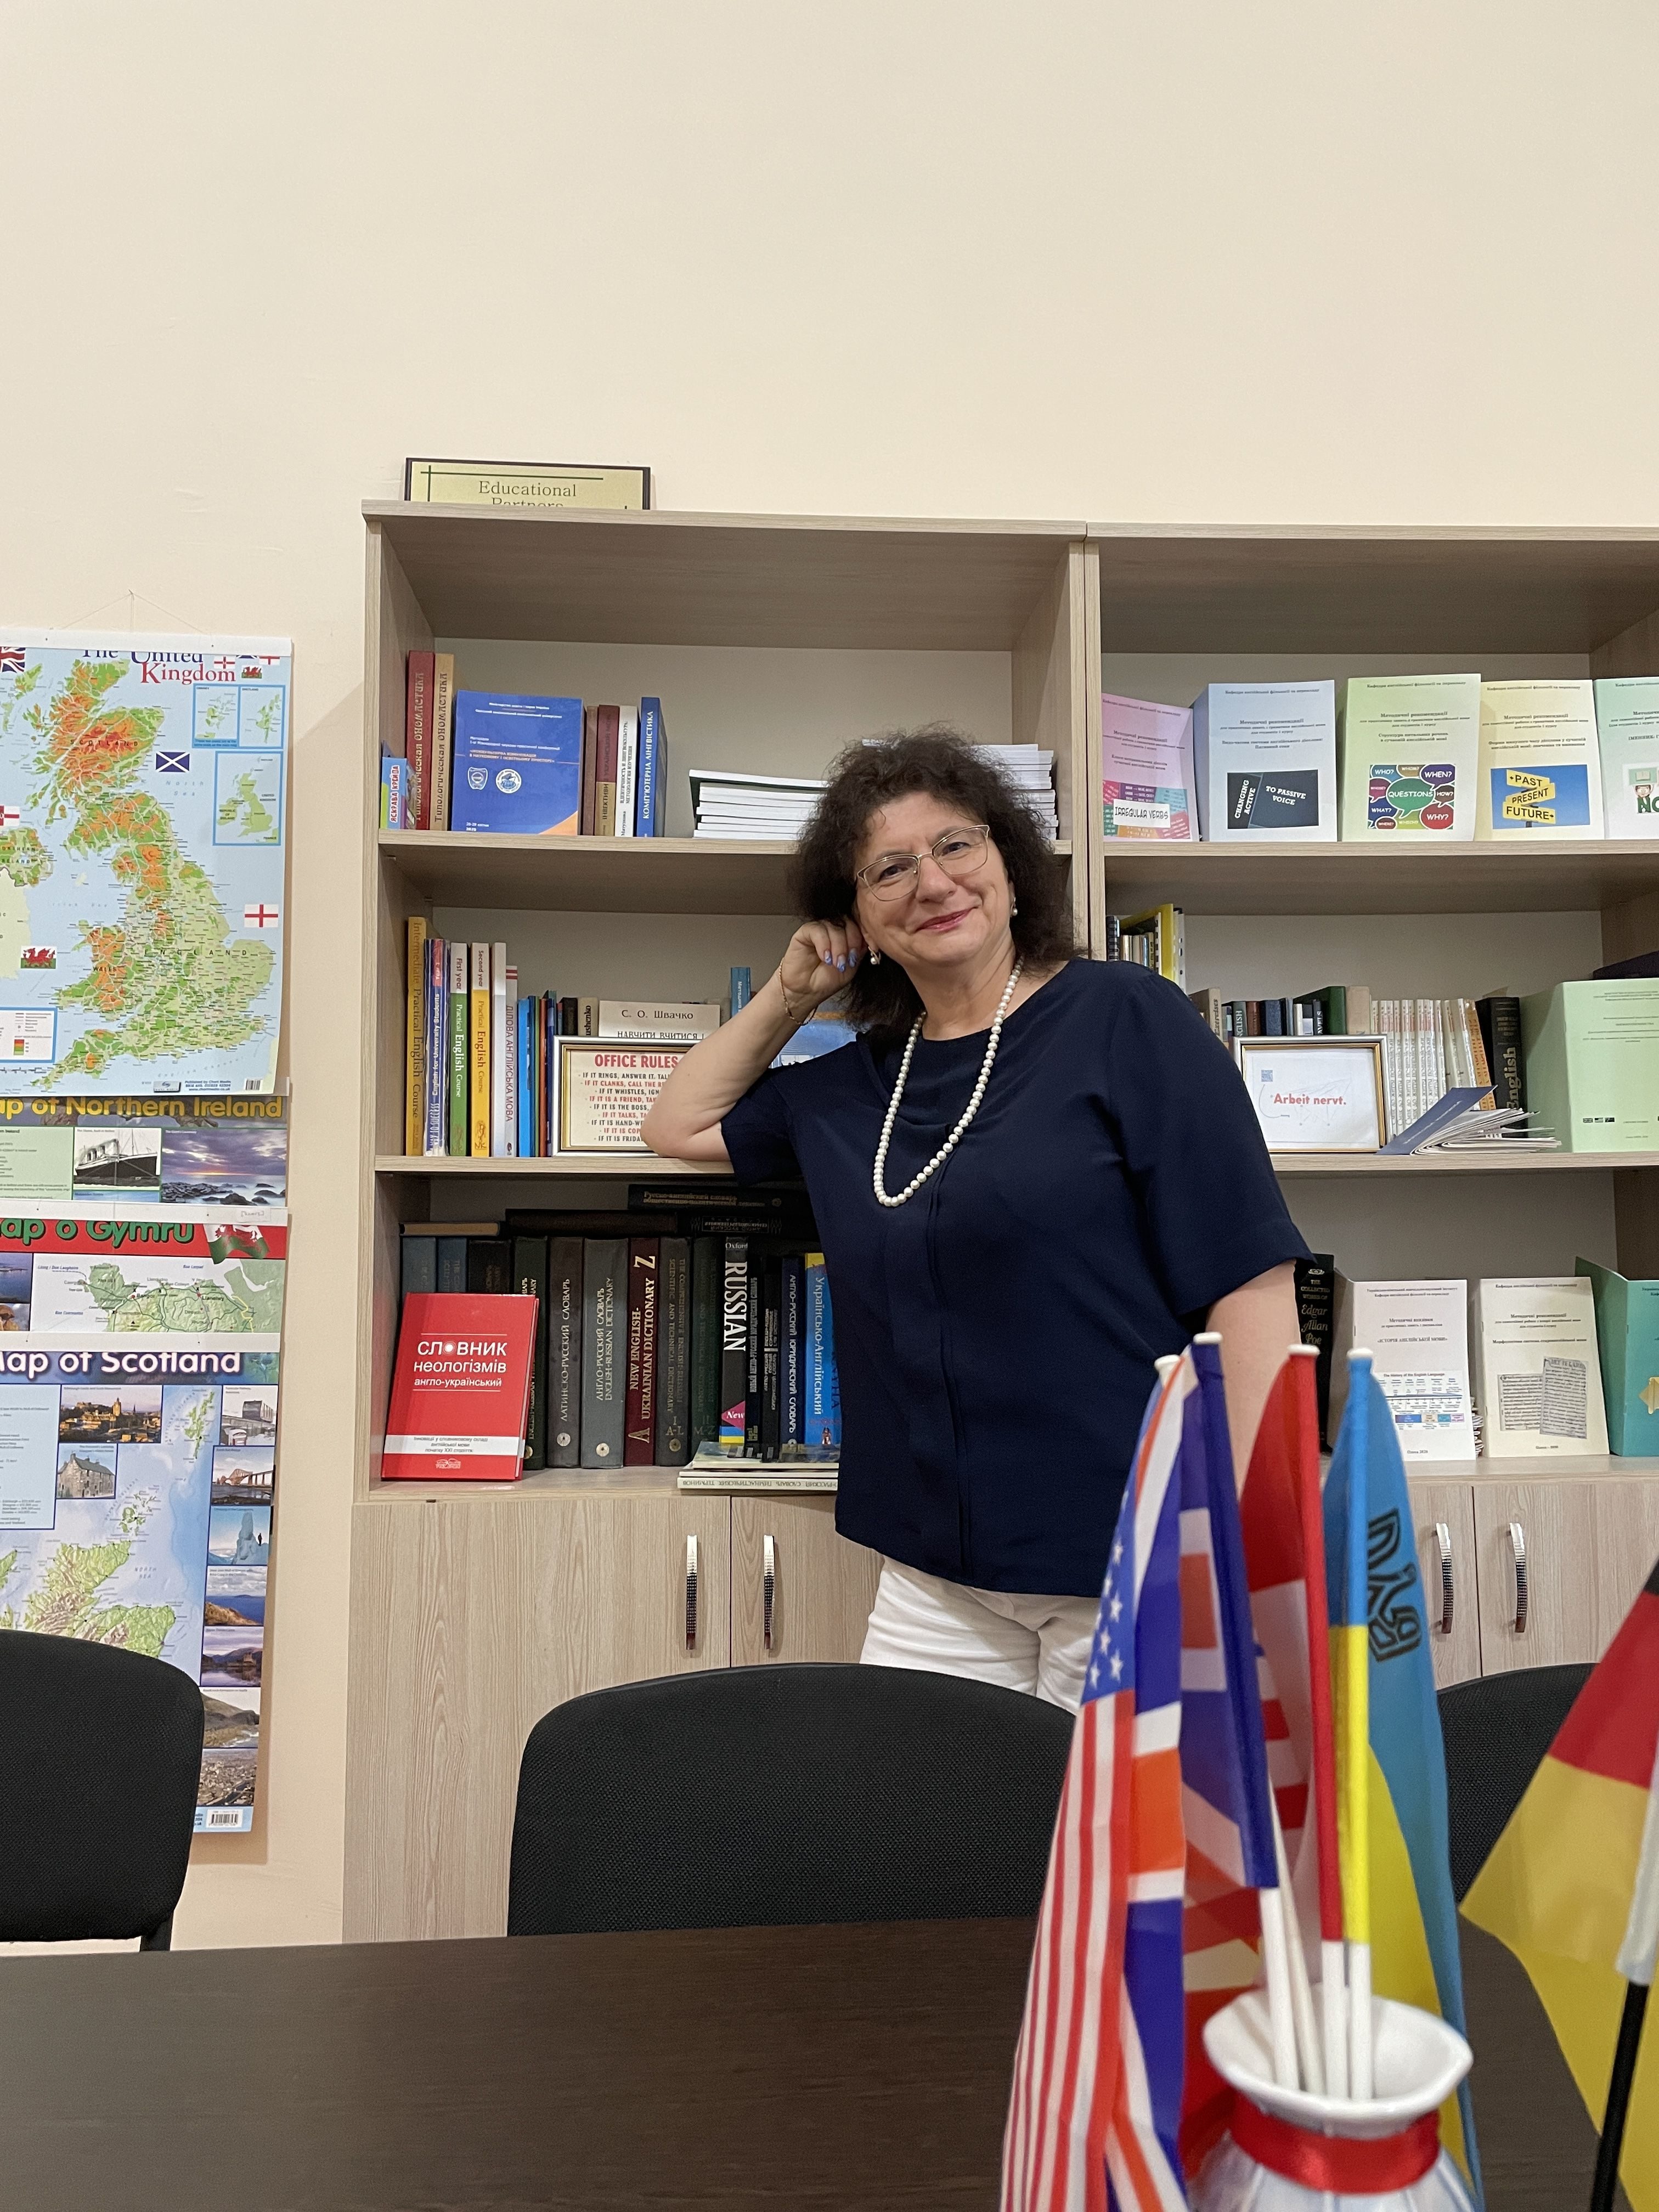 Как выучить любой язык и что ждет украинскую школу перевода: интервью с украинской ученой Татьяной Домброван